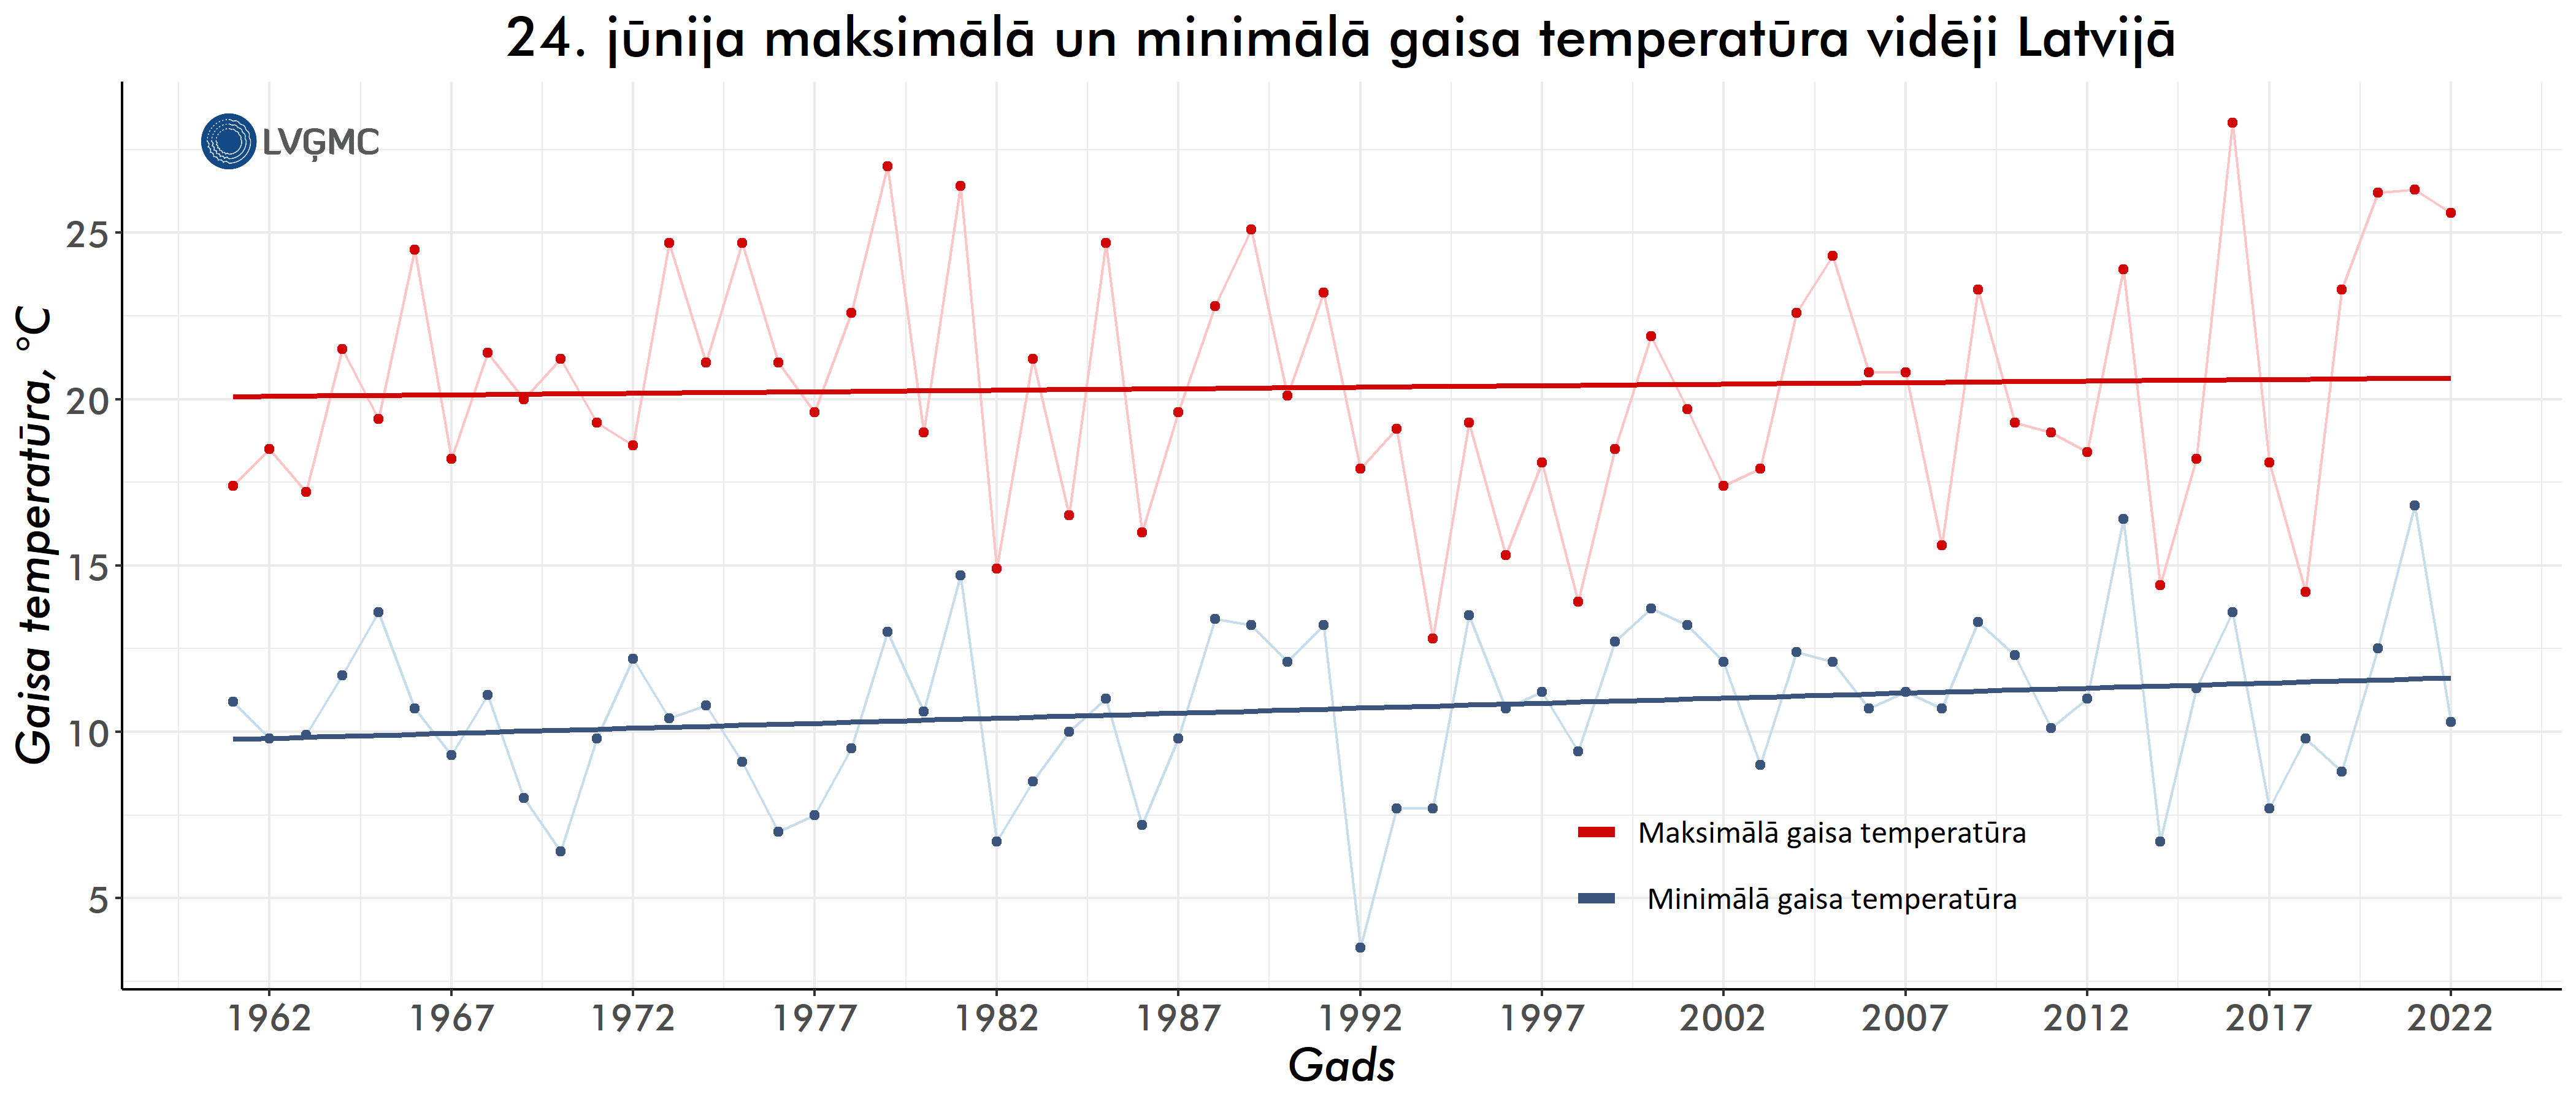 24. jūnija minimālā un maksimālā gaisa temperatūra vidēji Latvijā, °C